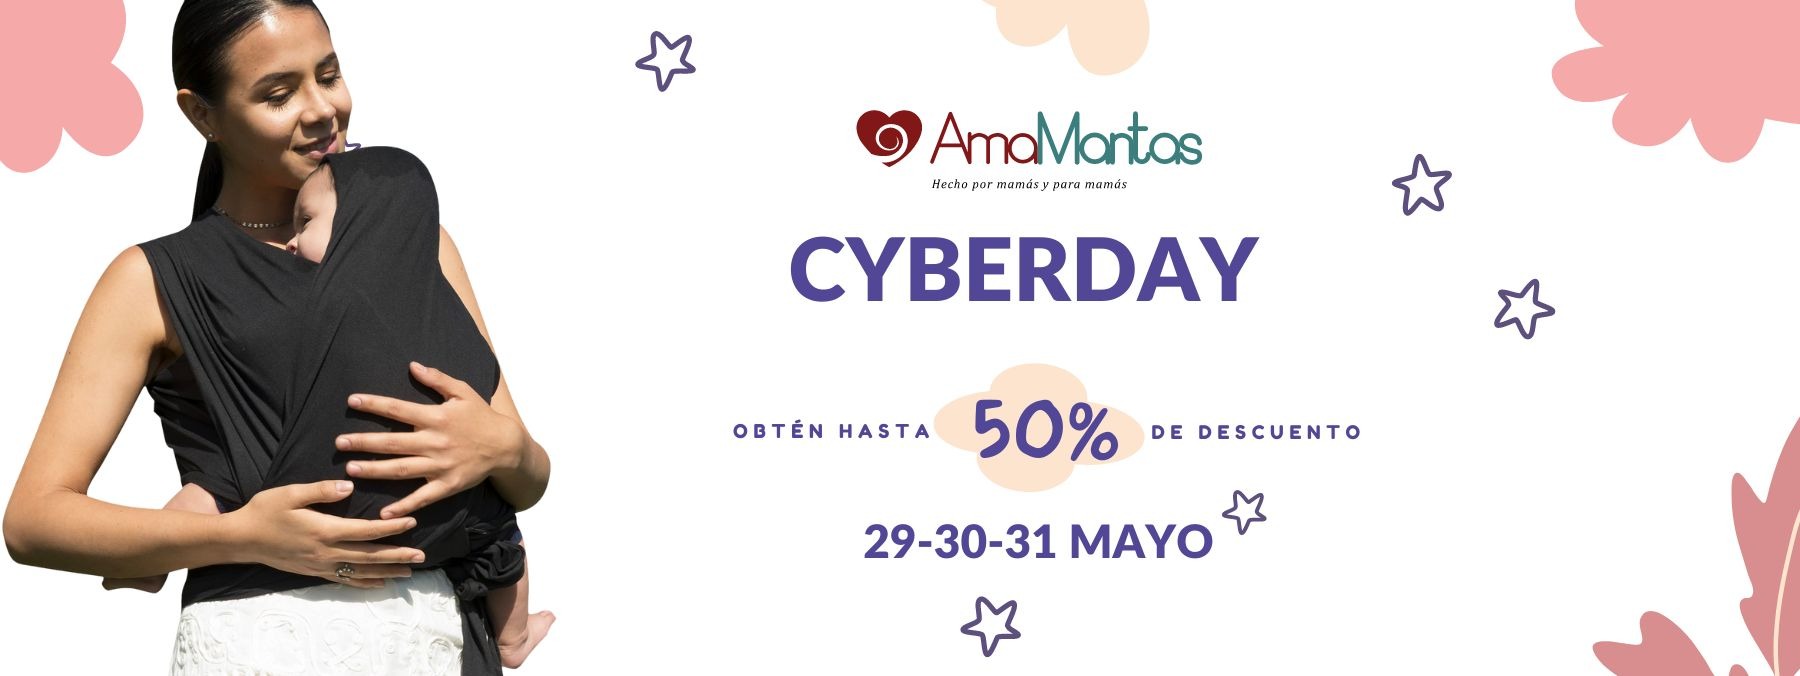 ¡Prepárate para las Mejores Ofertas de Cyberday con Amamantas!